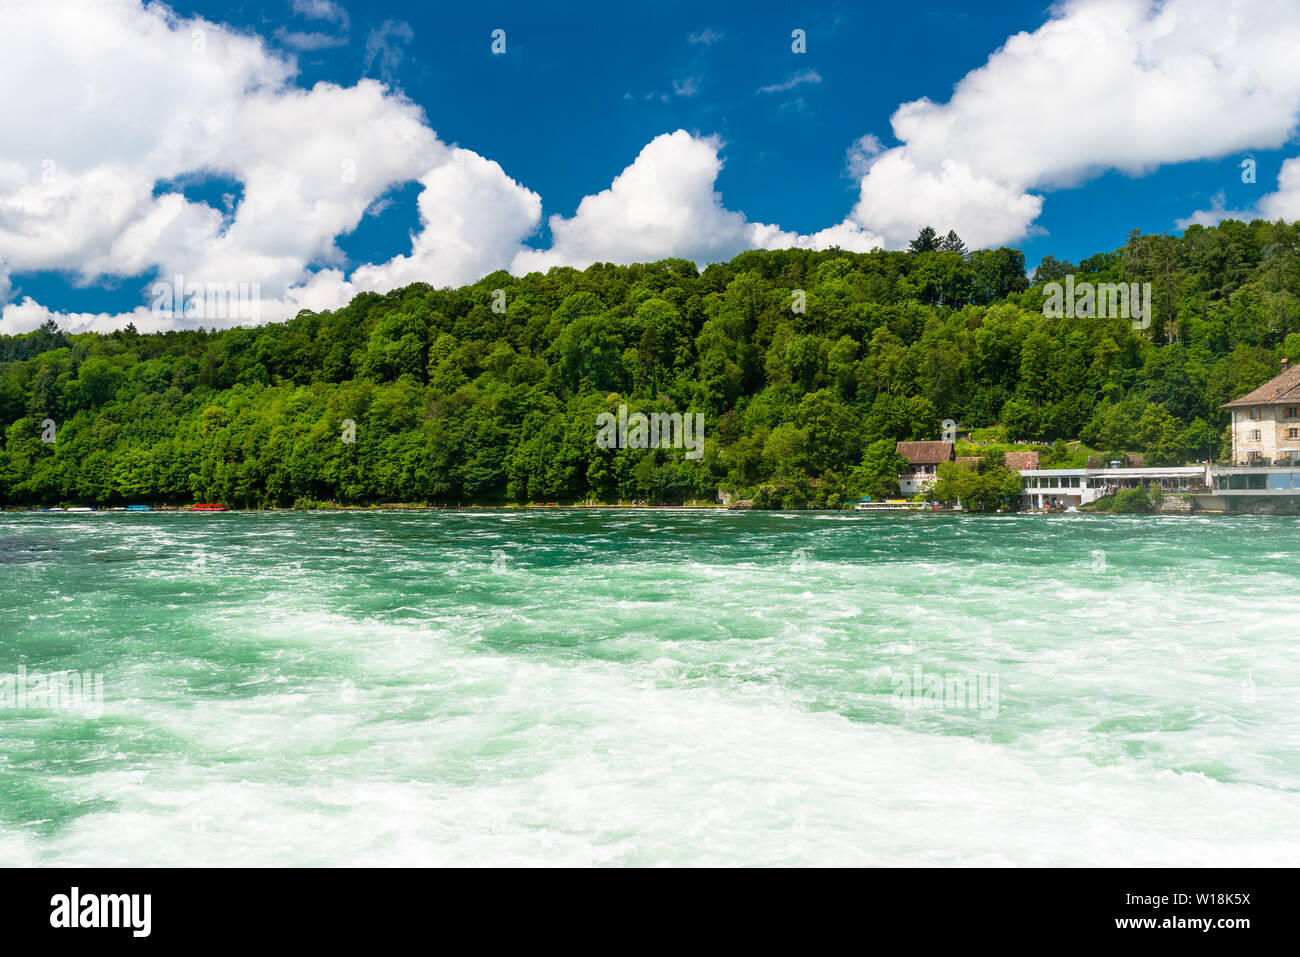 Schöne Aussicht auf den Rhein in Türkis, an der Quelle in der Schweiz, gleich hinter der größte Wasserfall Europas. Stockfoto